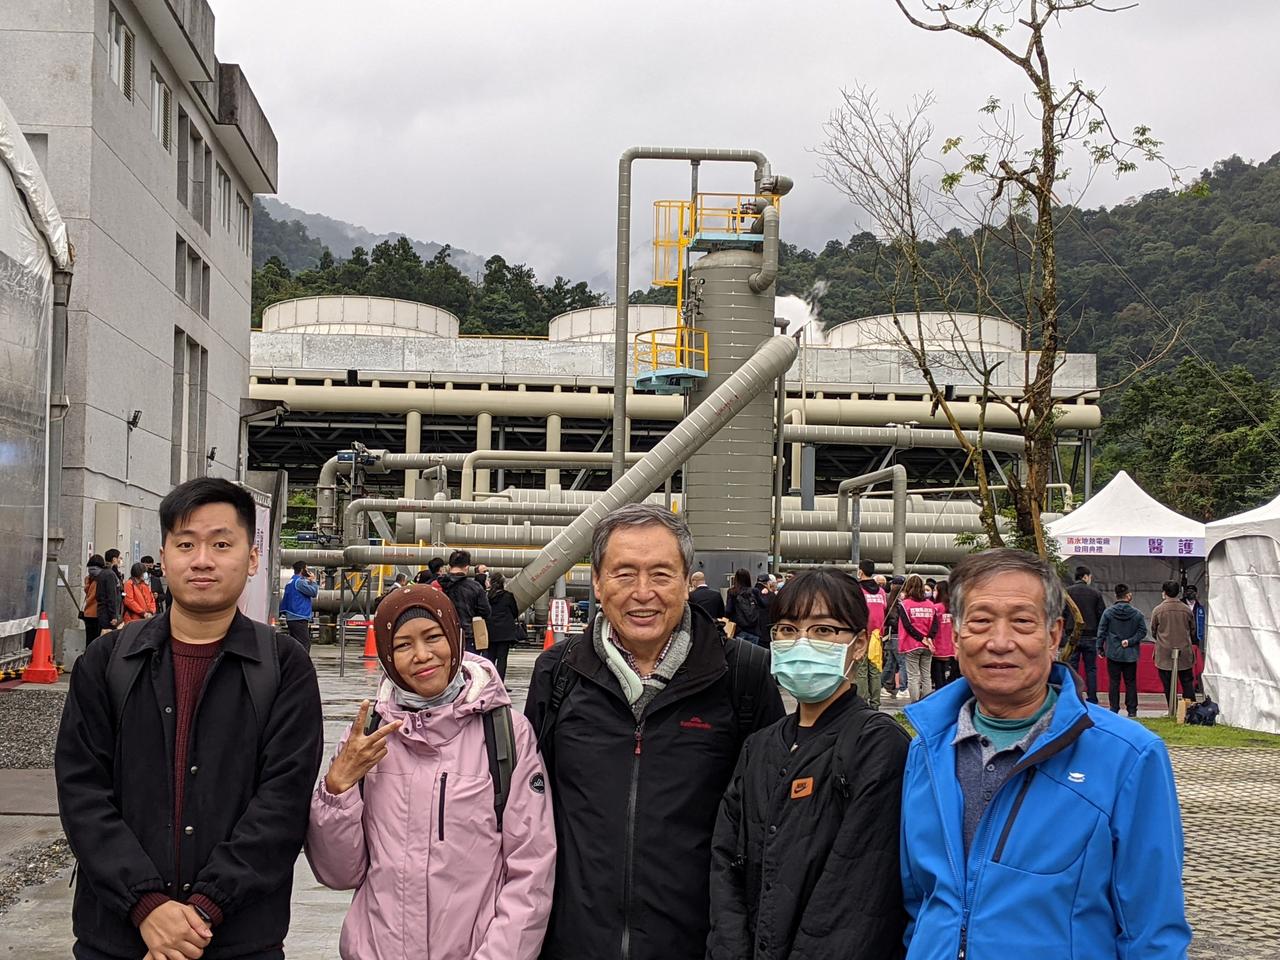 Eine Gruppe Menschen posiert für ein Foto vor einem Erdwärmekraftwerk.